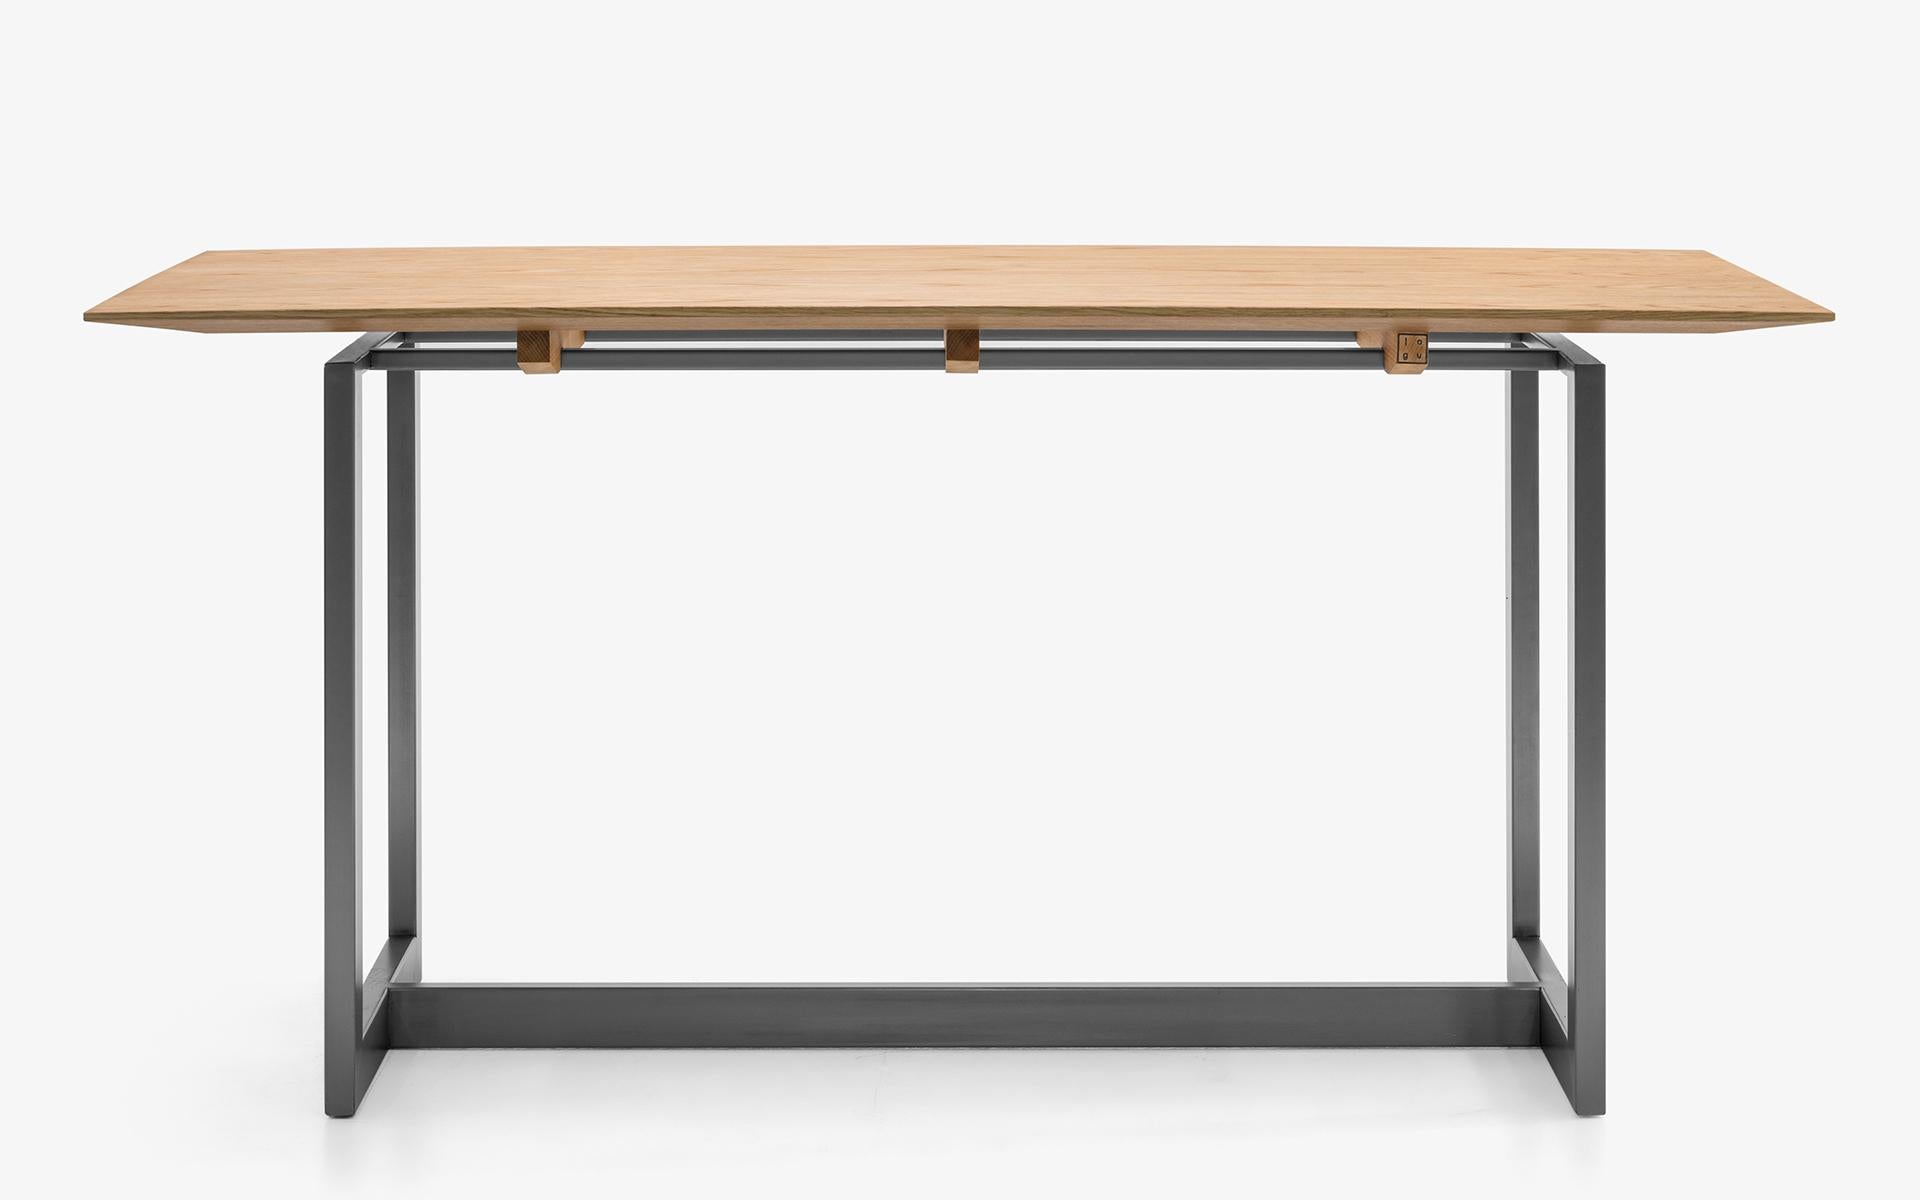 Ein kompakter Arbeitstisch, der mit seinen stabilen Beinen und seiner fesselnden Tischplatte einen dekorativen Akzent in Ihrem Zuhause oder Büro setzt. Er bietet Ihnen eine stilvolle Oberfläche in Ihrem Arbeitsbereich, auf der Ihre Gedanken und